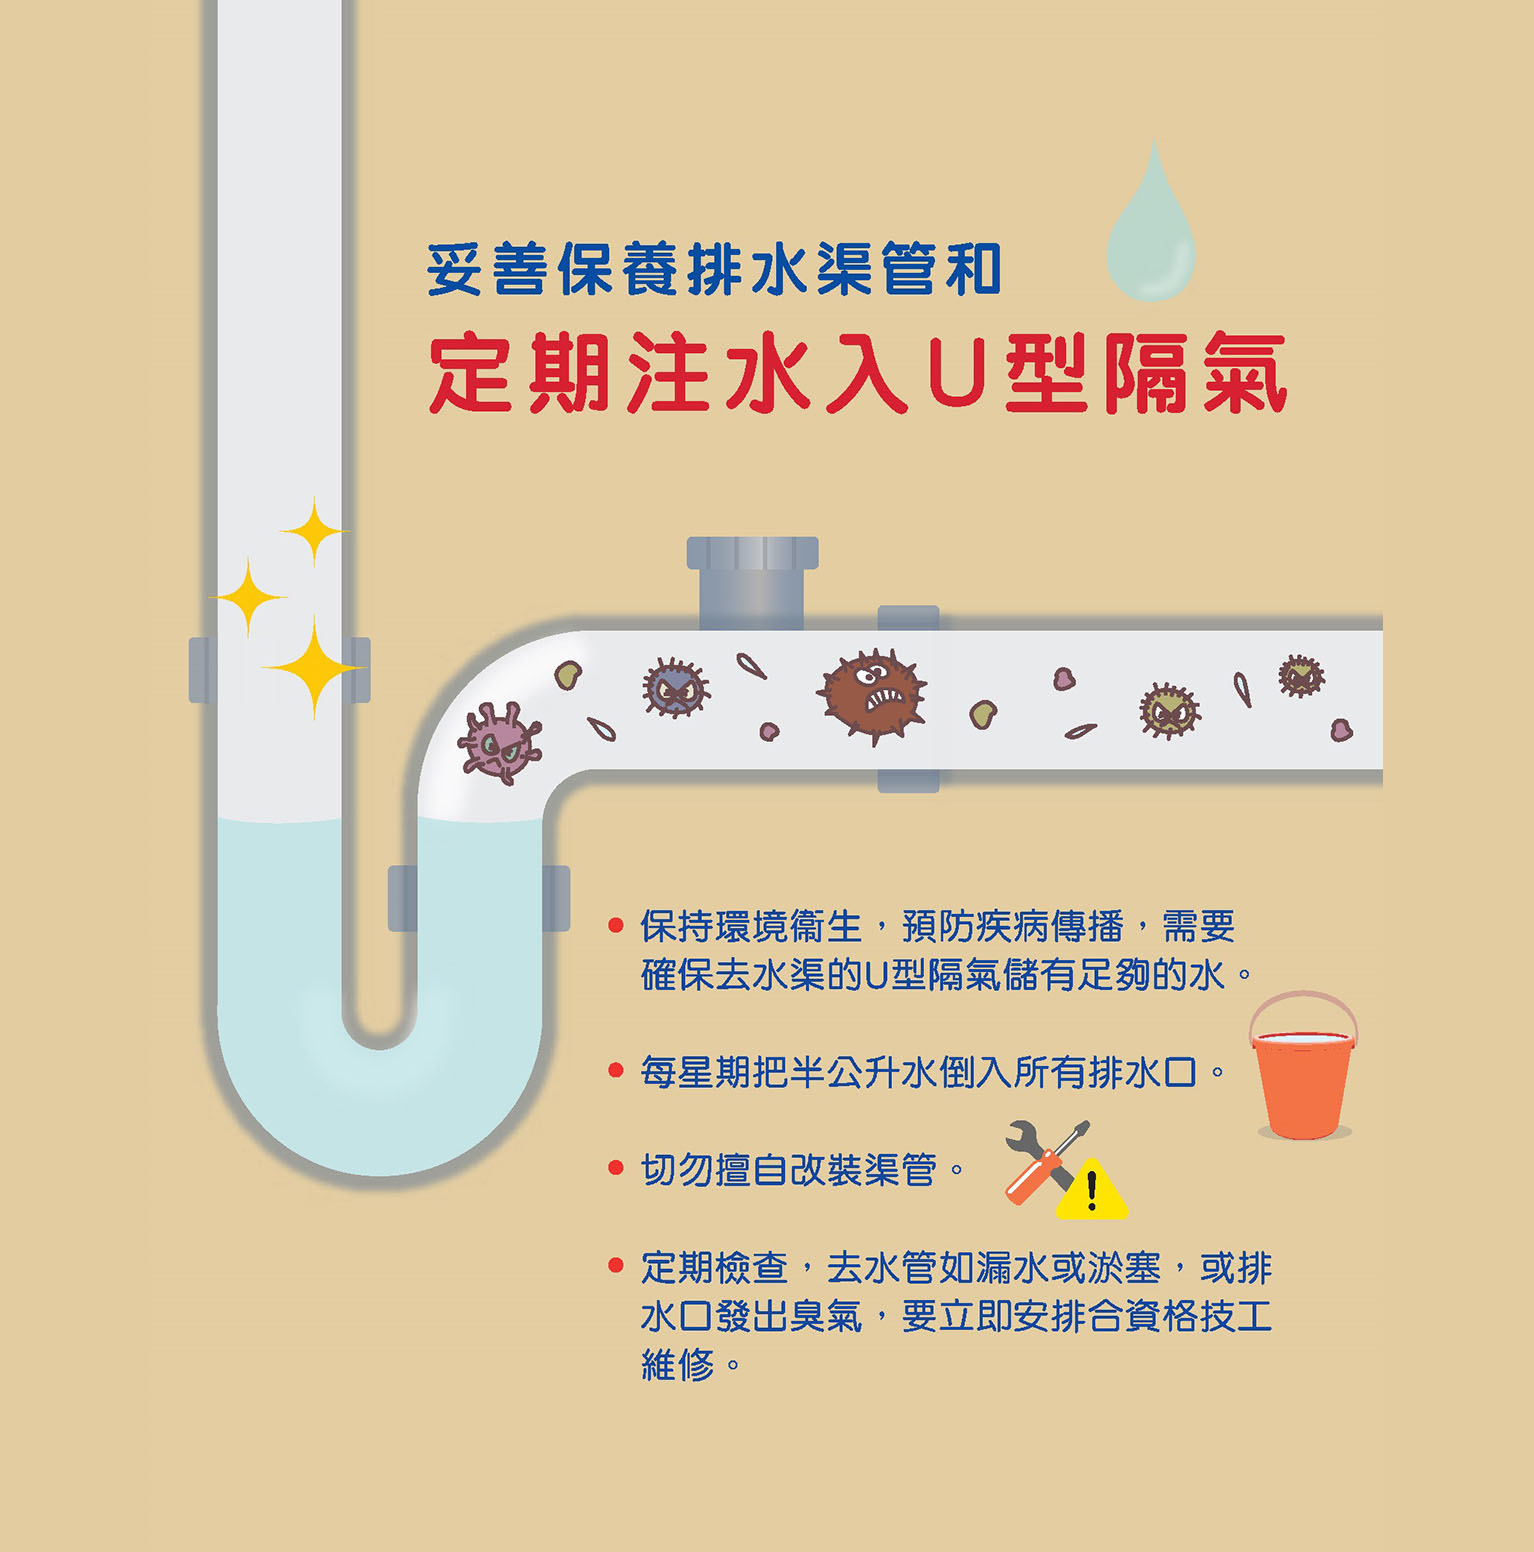 妥善保養排水渠管和定期注水入U型隔氣